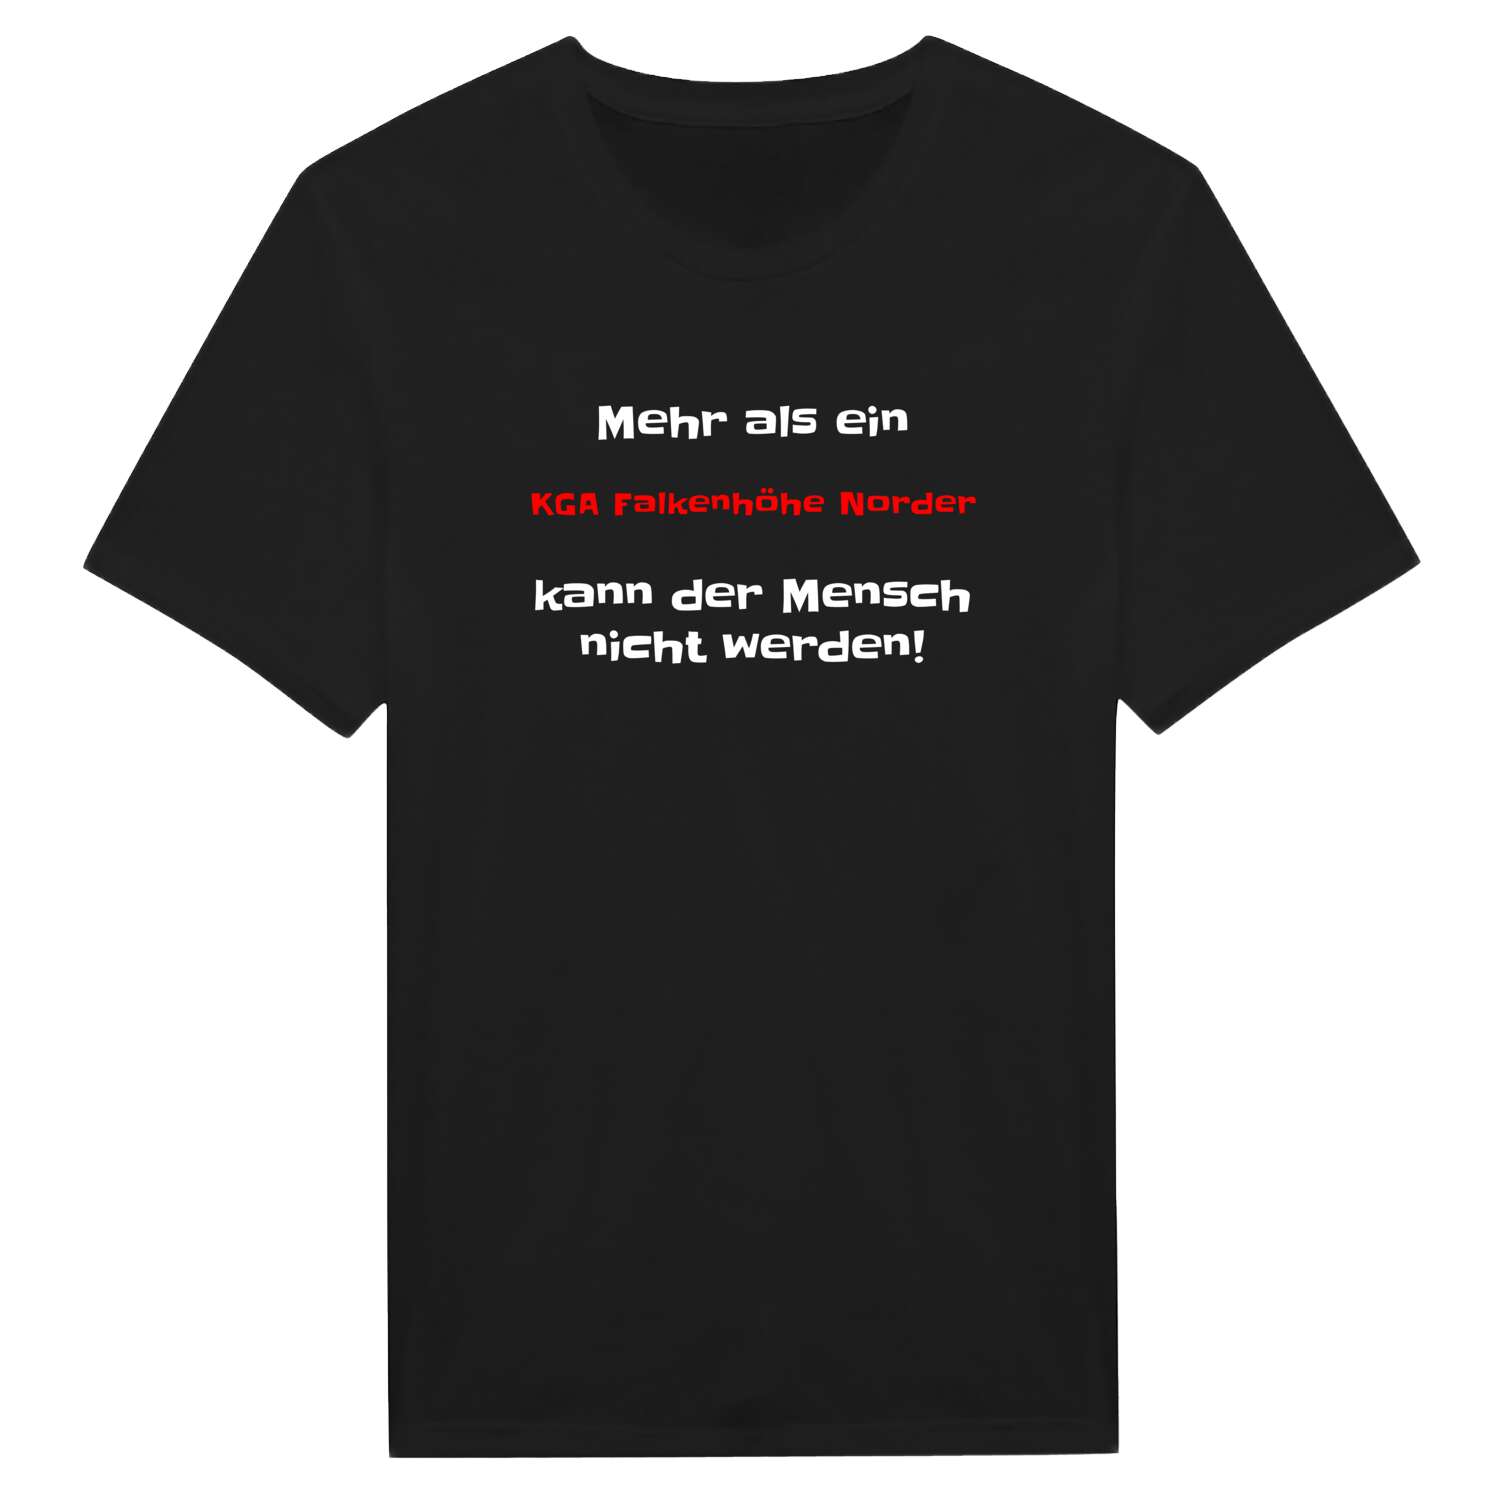 KGA Falkenhöhe Nord T-Shirt »Mehr als ein«